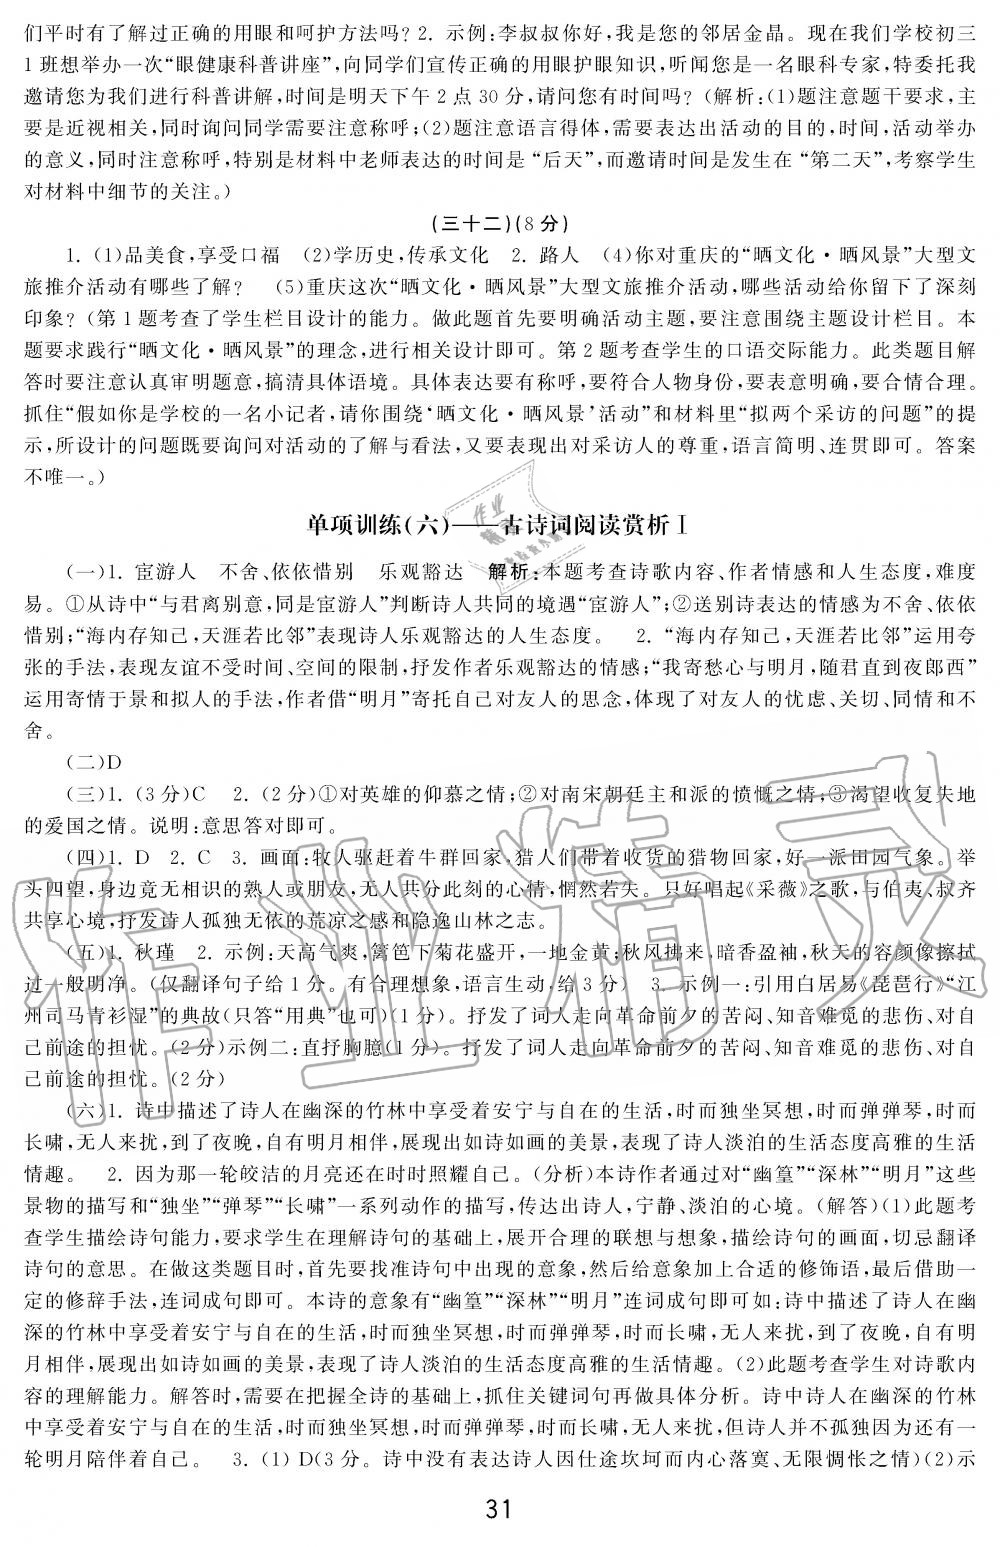 2019年学习周报初中九年级学练案合刊语文 第31页